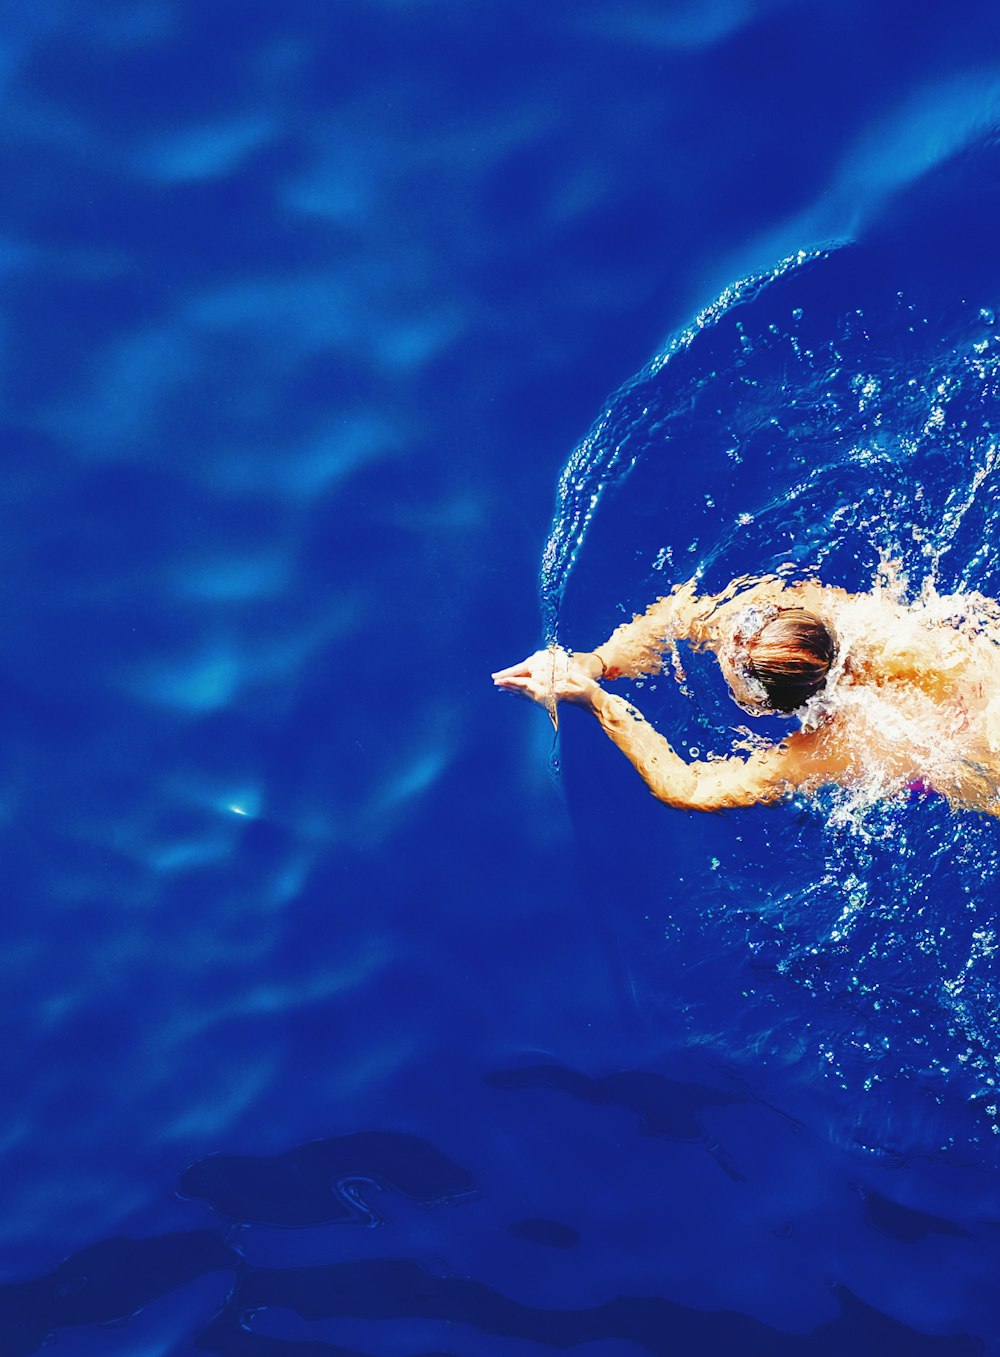 Photographie en gros plan d’une femme nageant sur de l’eau calme